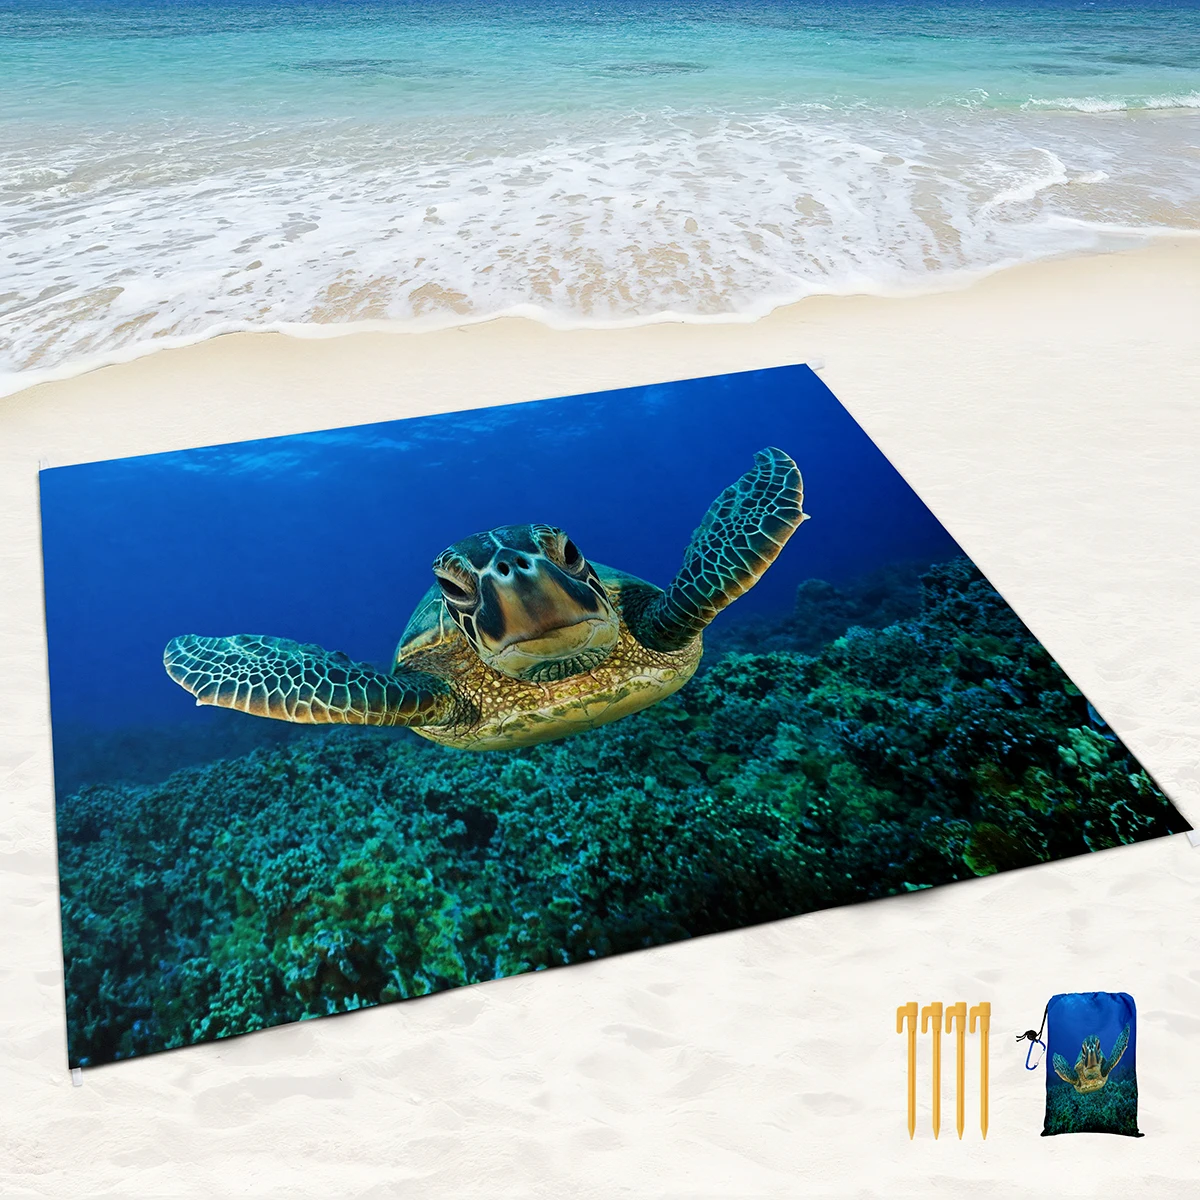 Пляжное одеяло с морской черепахой, Пескостойкий коврик без песка с угловыми карманами и сетчатой сумкой для улицы, пикника, путешествий, пляжа